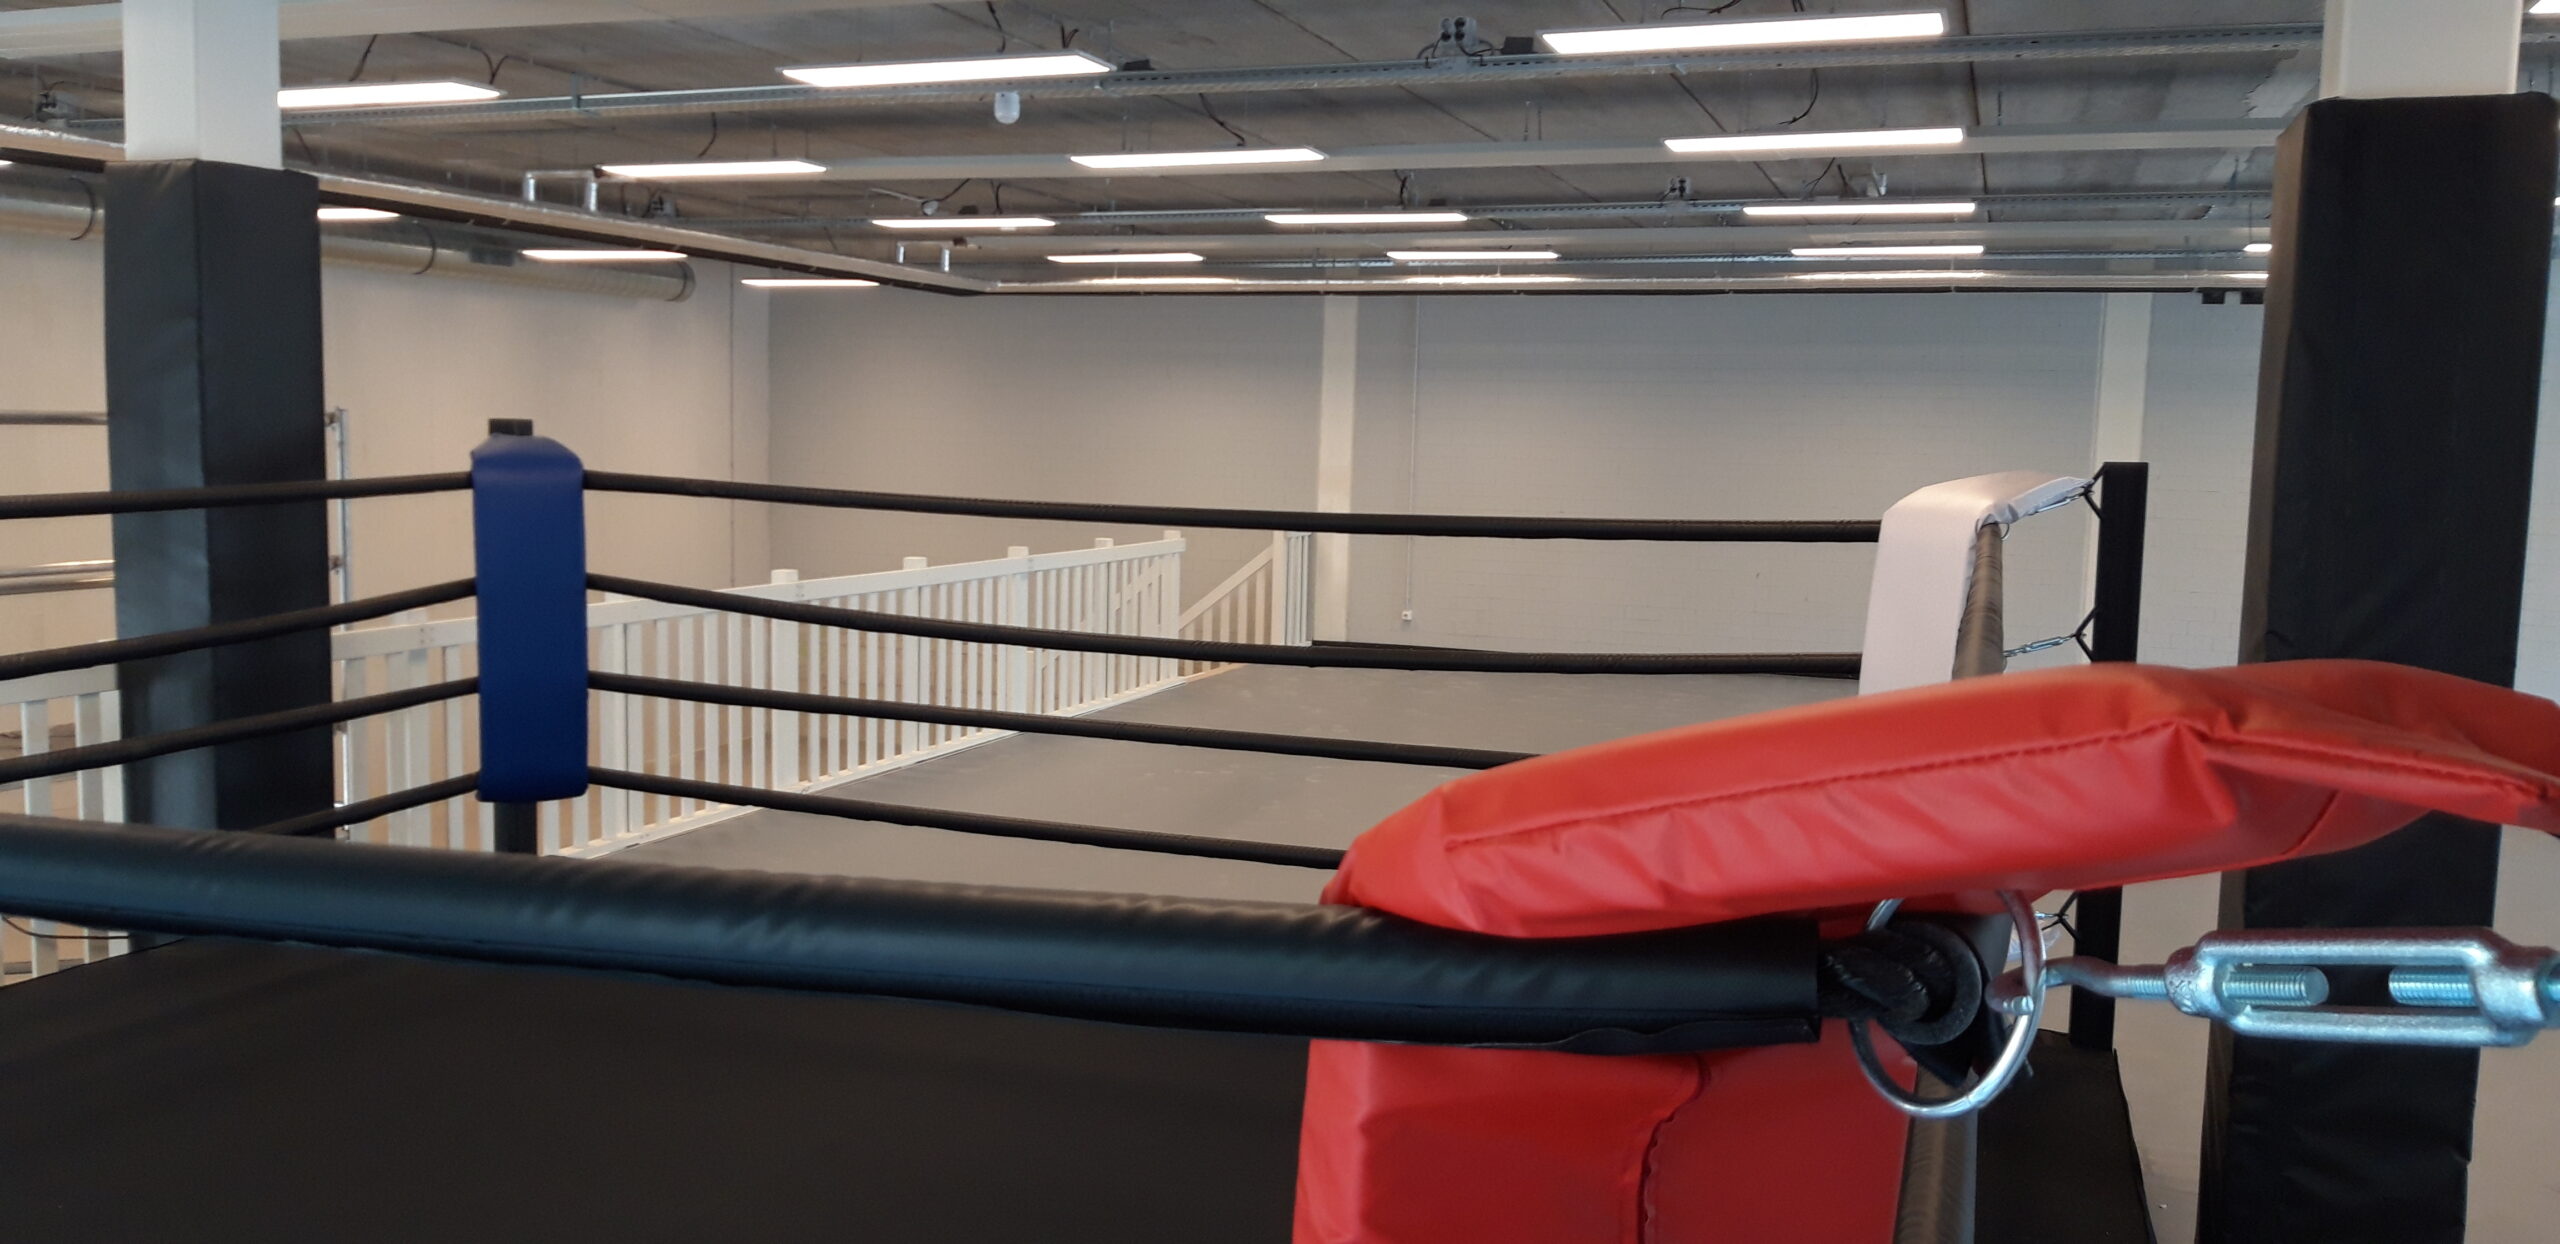 niettemin Bloedbad Bestuurbaar New location: USC School of Boxing! :: USC